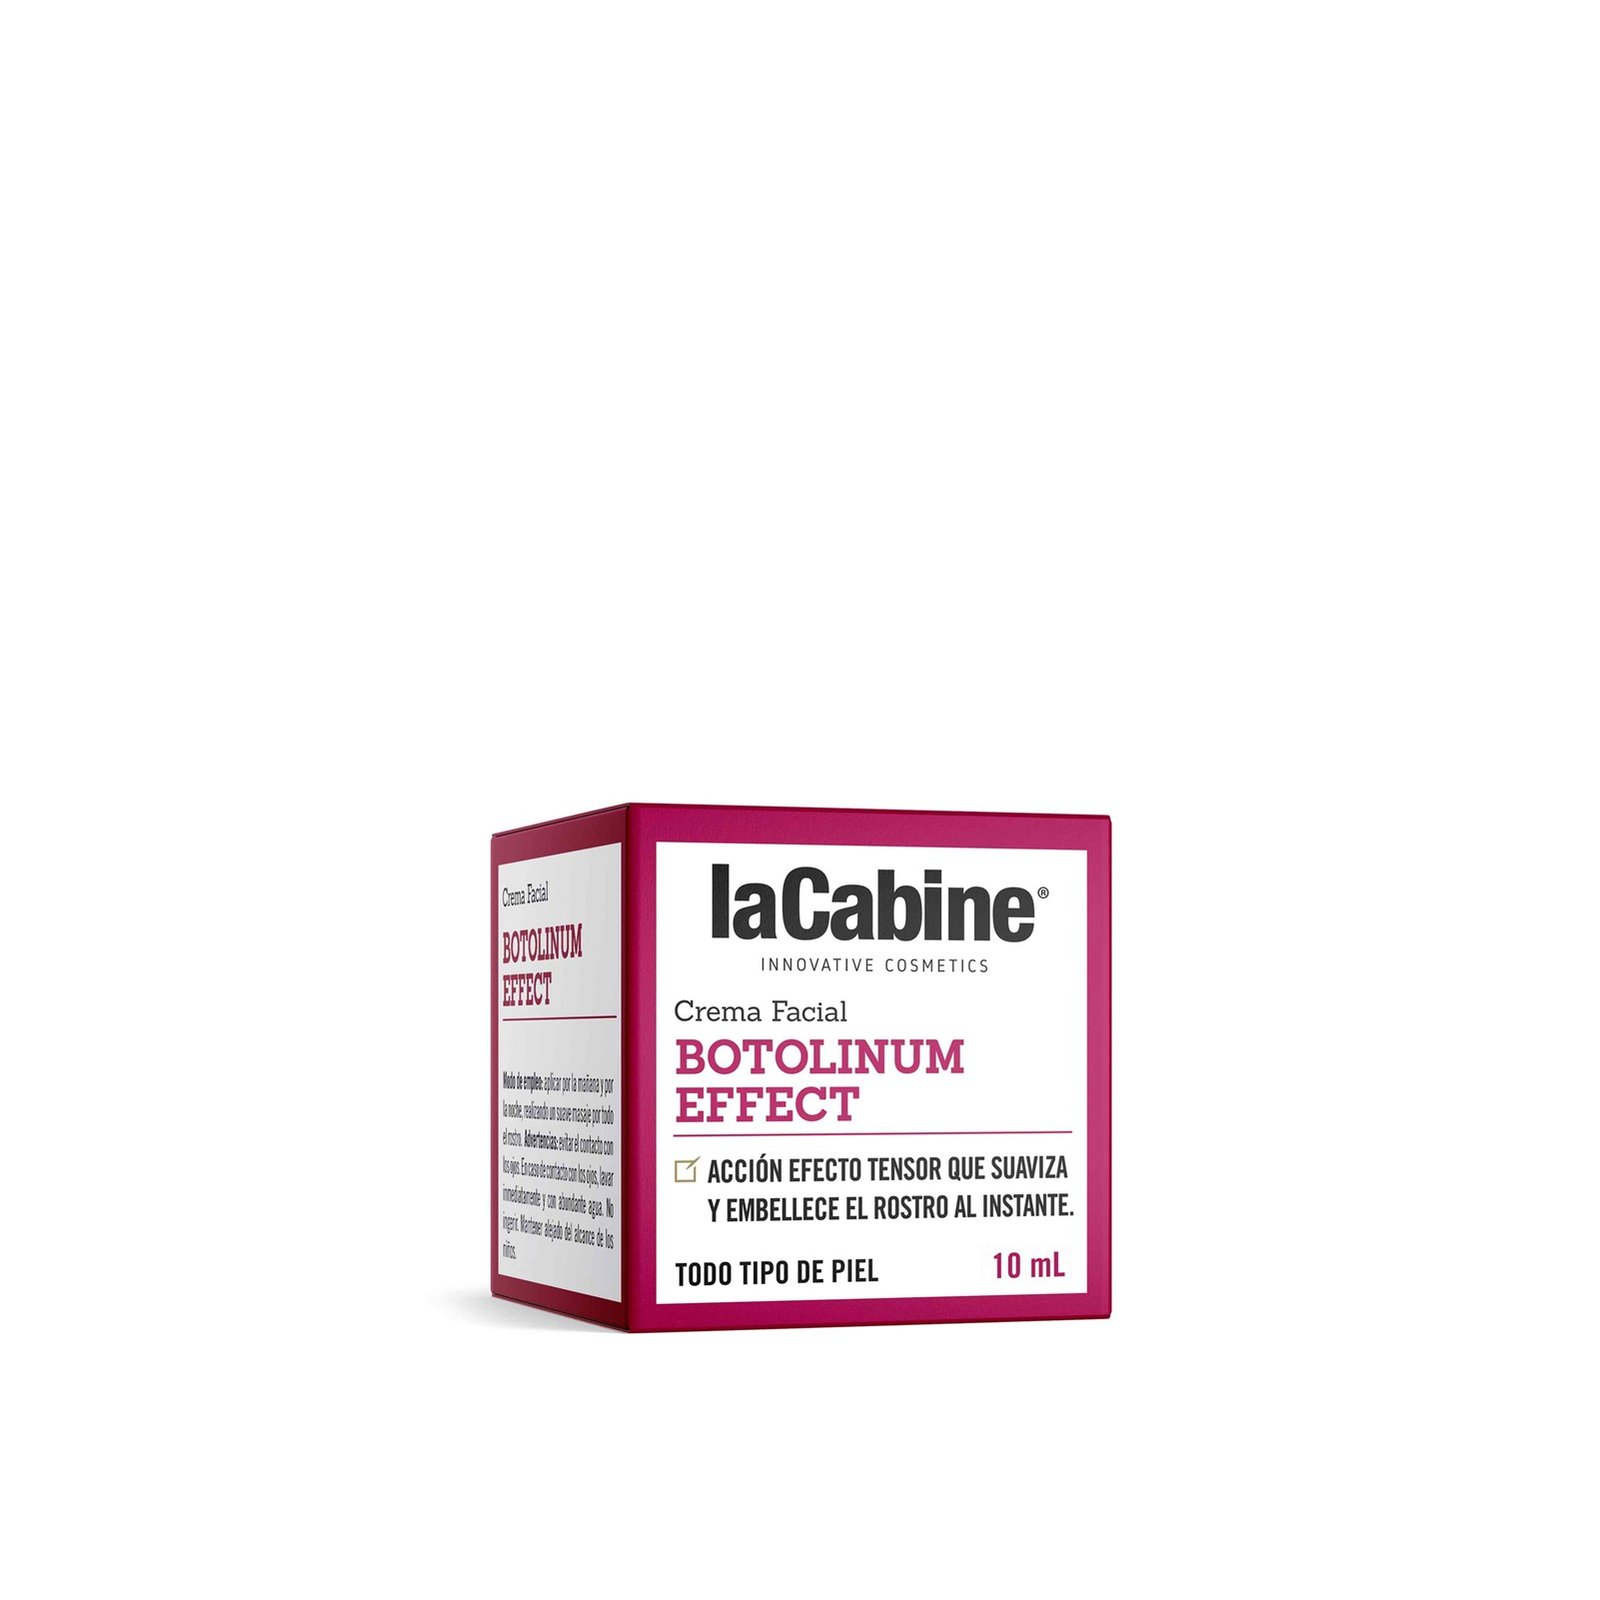 La Cabine Botulinum Effect Face Cream 10ml (0.34 fl oz)